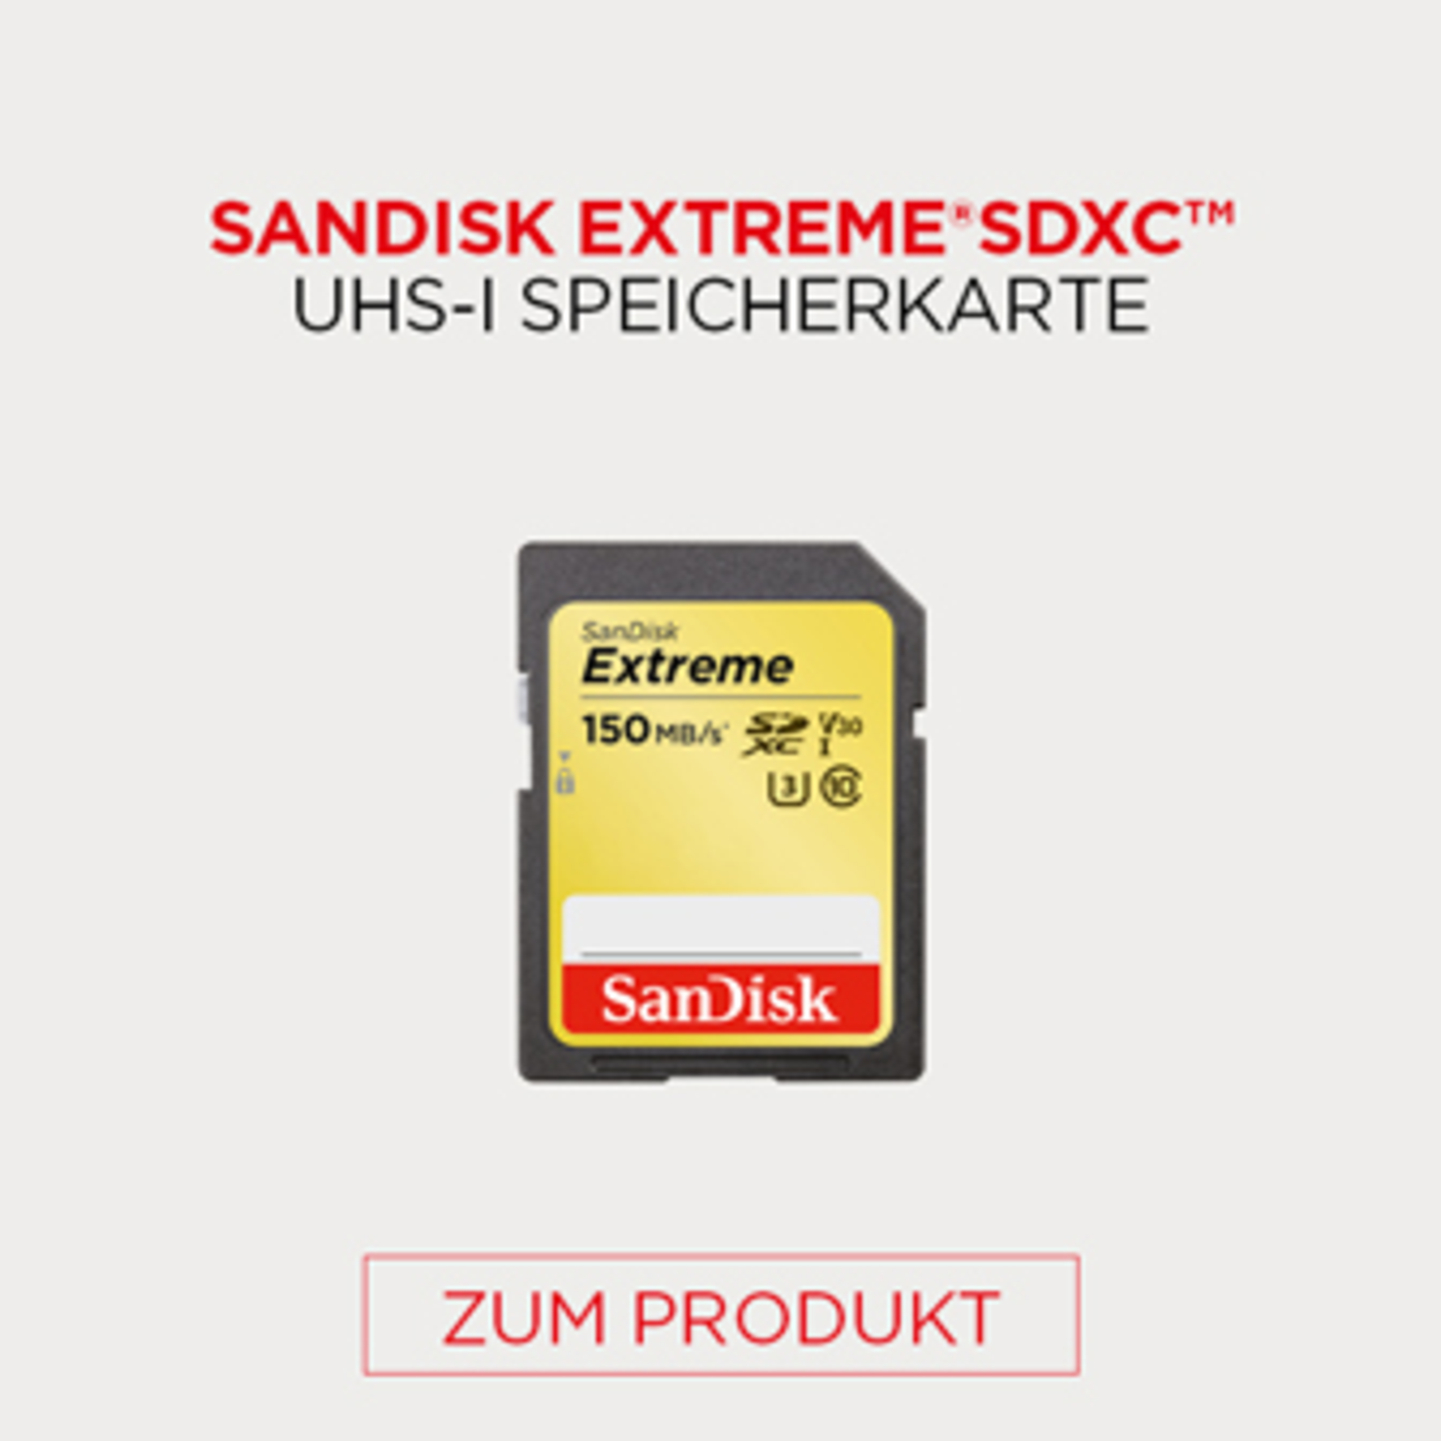 Sandisk Extreme SDXC UHS-I Speicherkarte